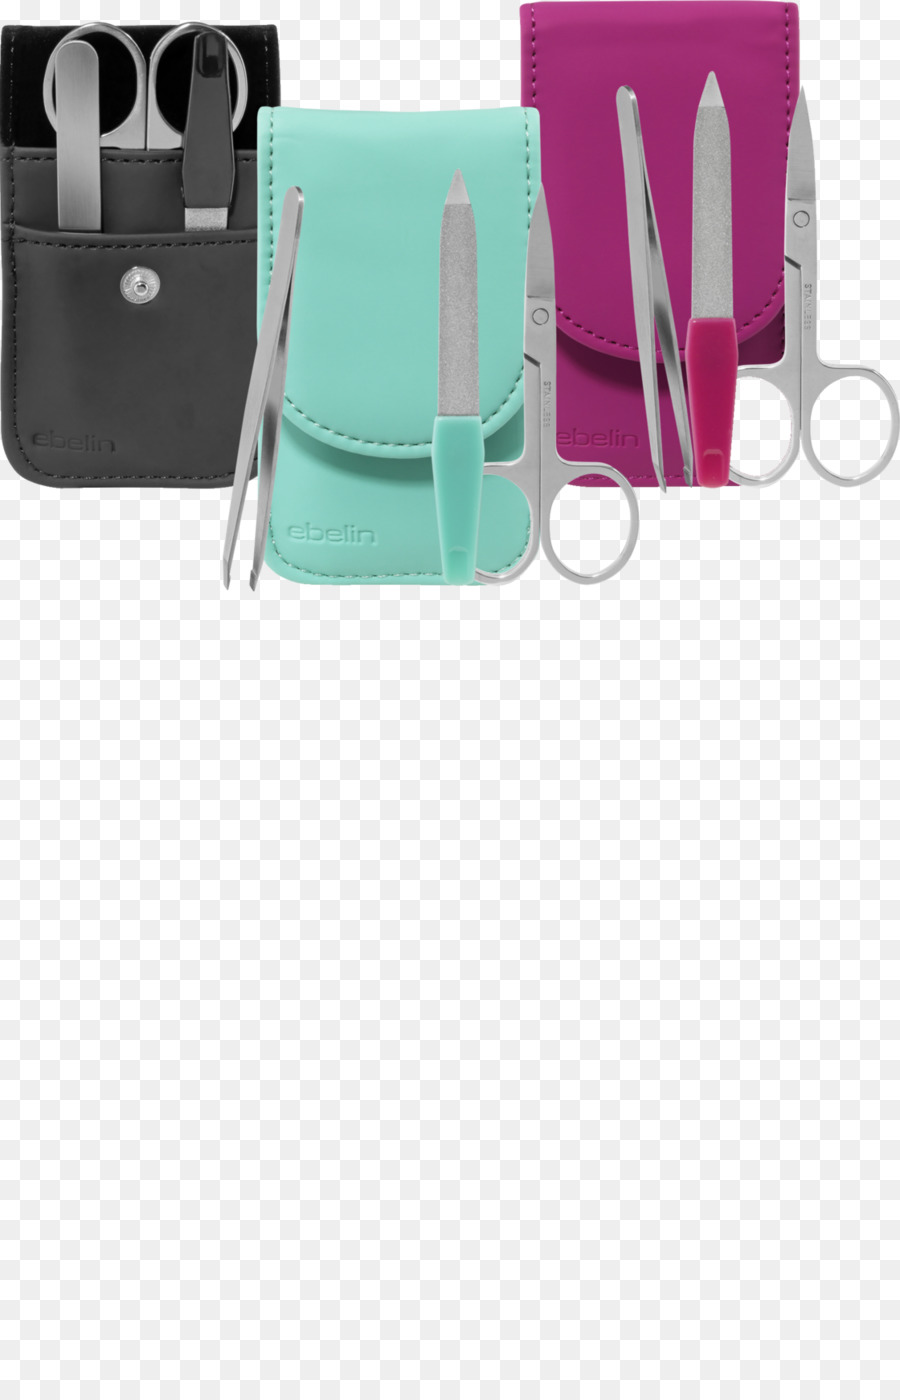 Handtasche Produkt-design der Marke - Maniküre set